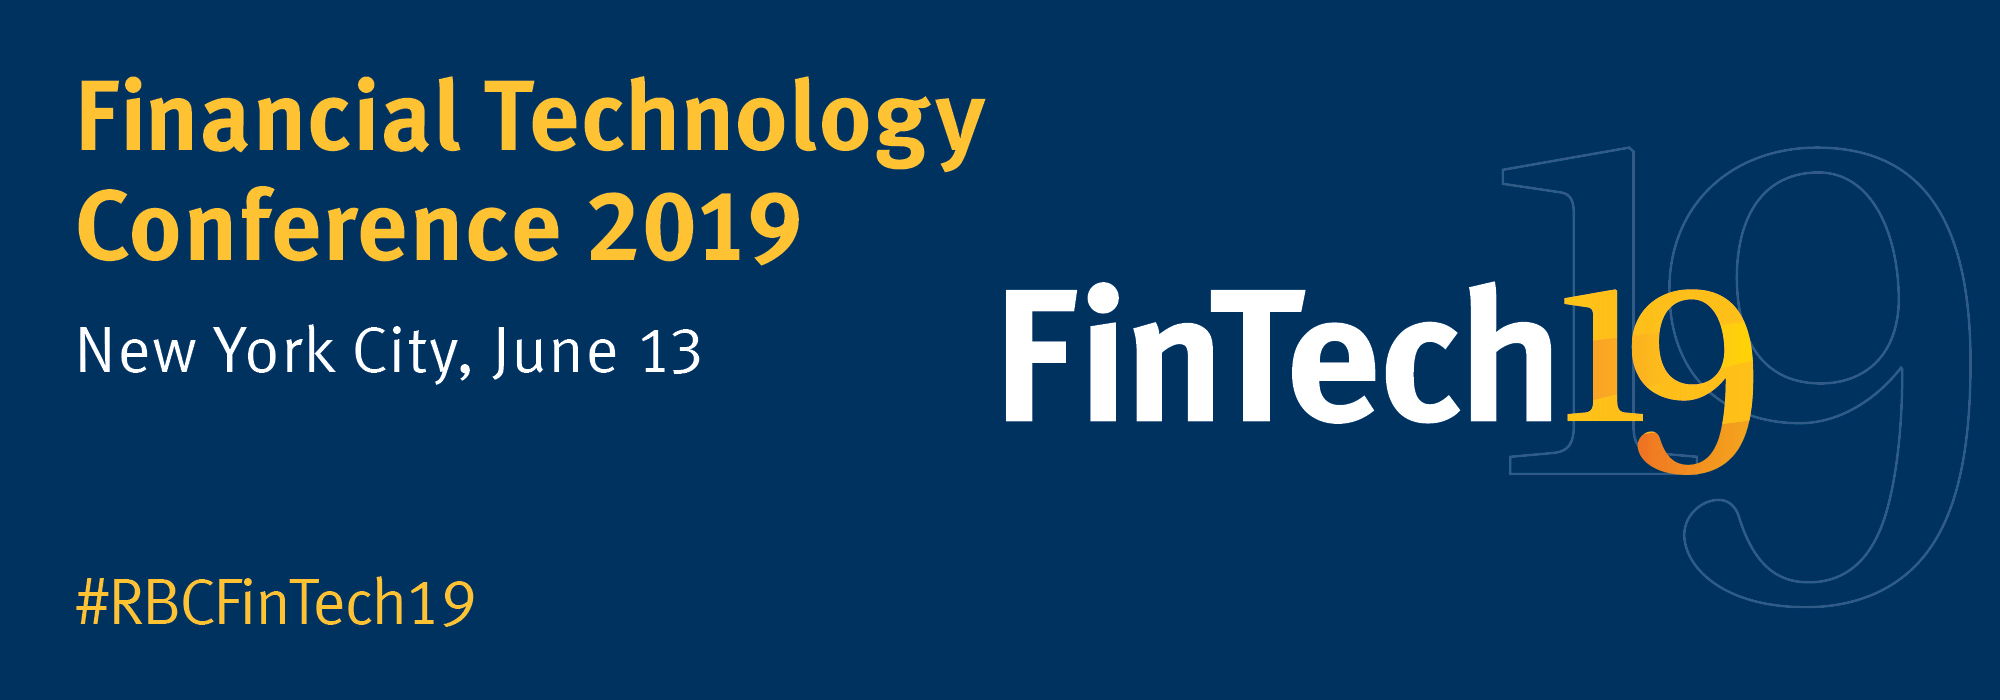 FinTech Conference 2019 | New York City, June 13 | #RBCFinTech19